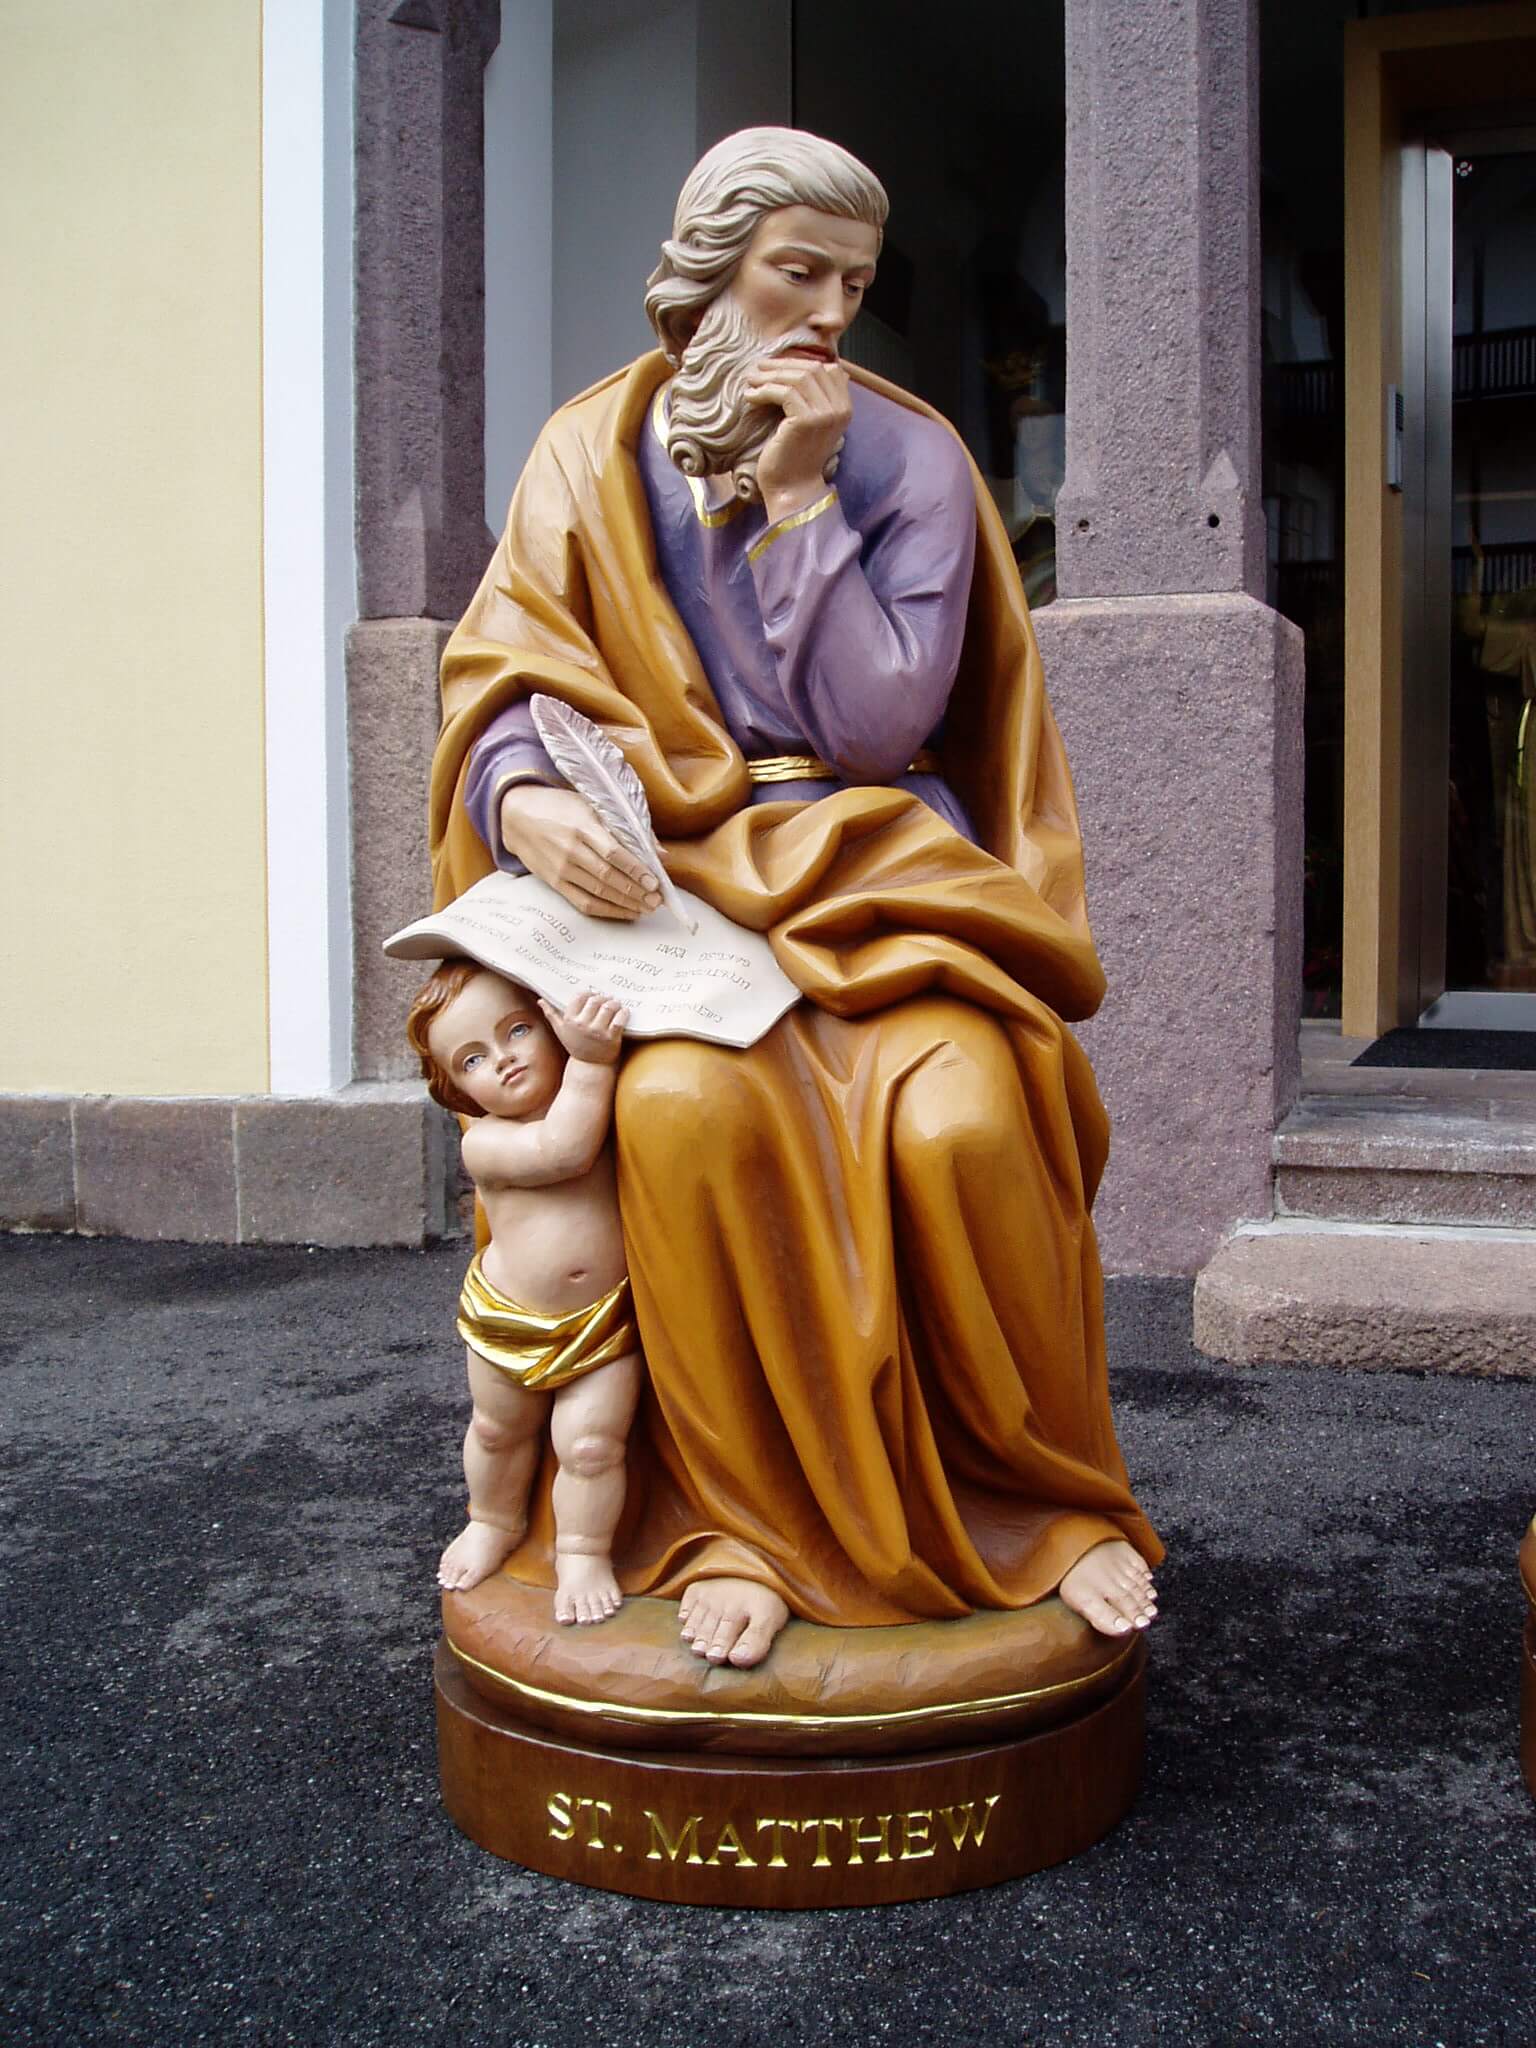 St Matthew the Evangelist | Wood Carved Statue